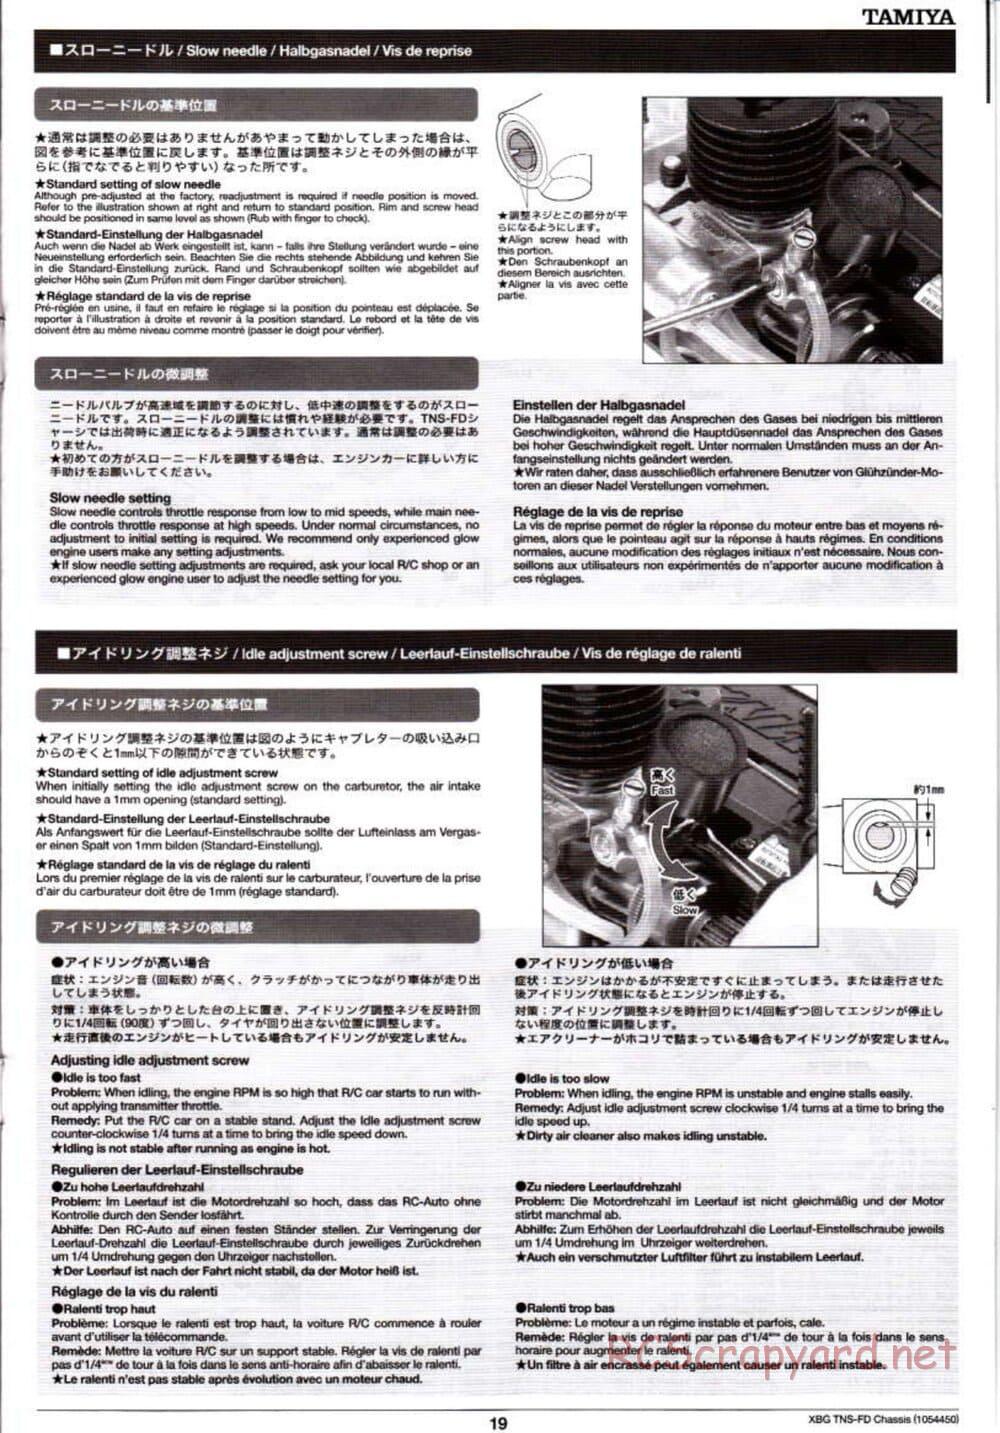 Tamiya - TNS-FD Chassis - Manual - Page 19